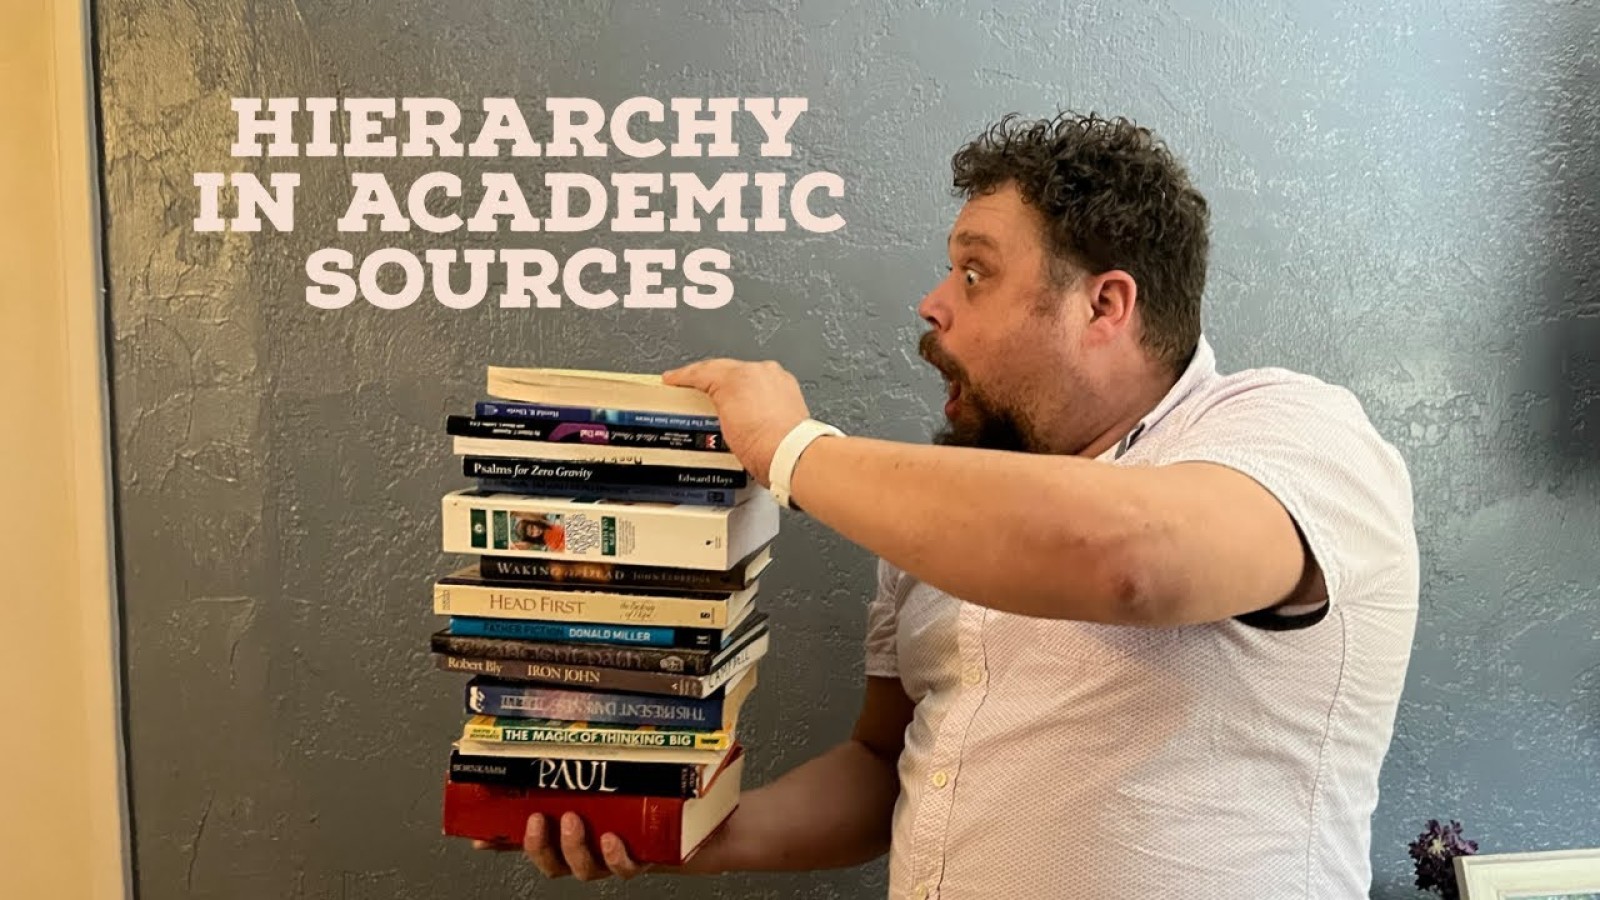 SOWK 322 Week 06 - Hierarchy in Academic Sources